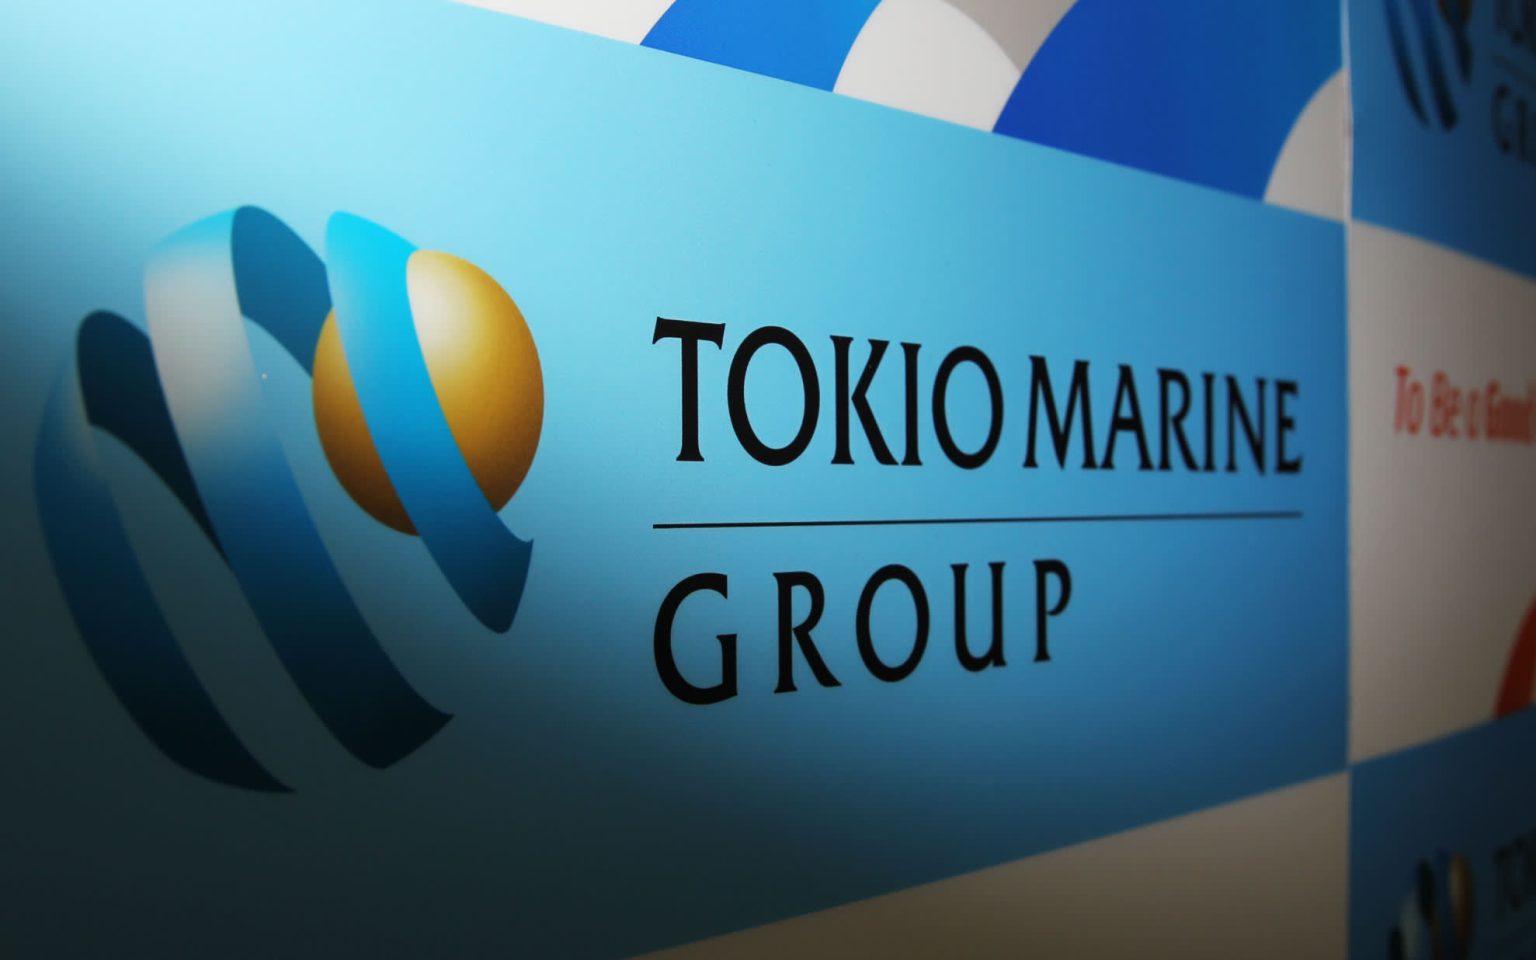 Страховой гигант Tokio Marine нацелен на покупку зарубежных бизнесов